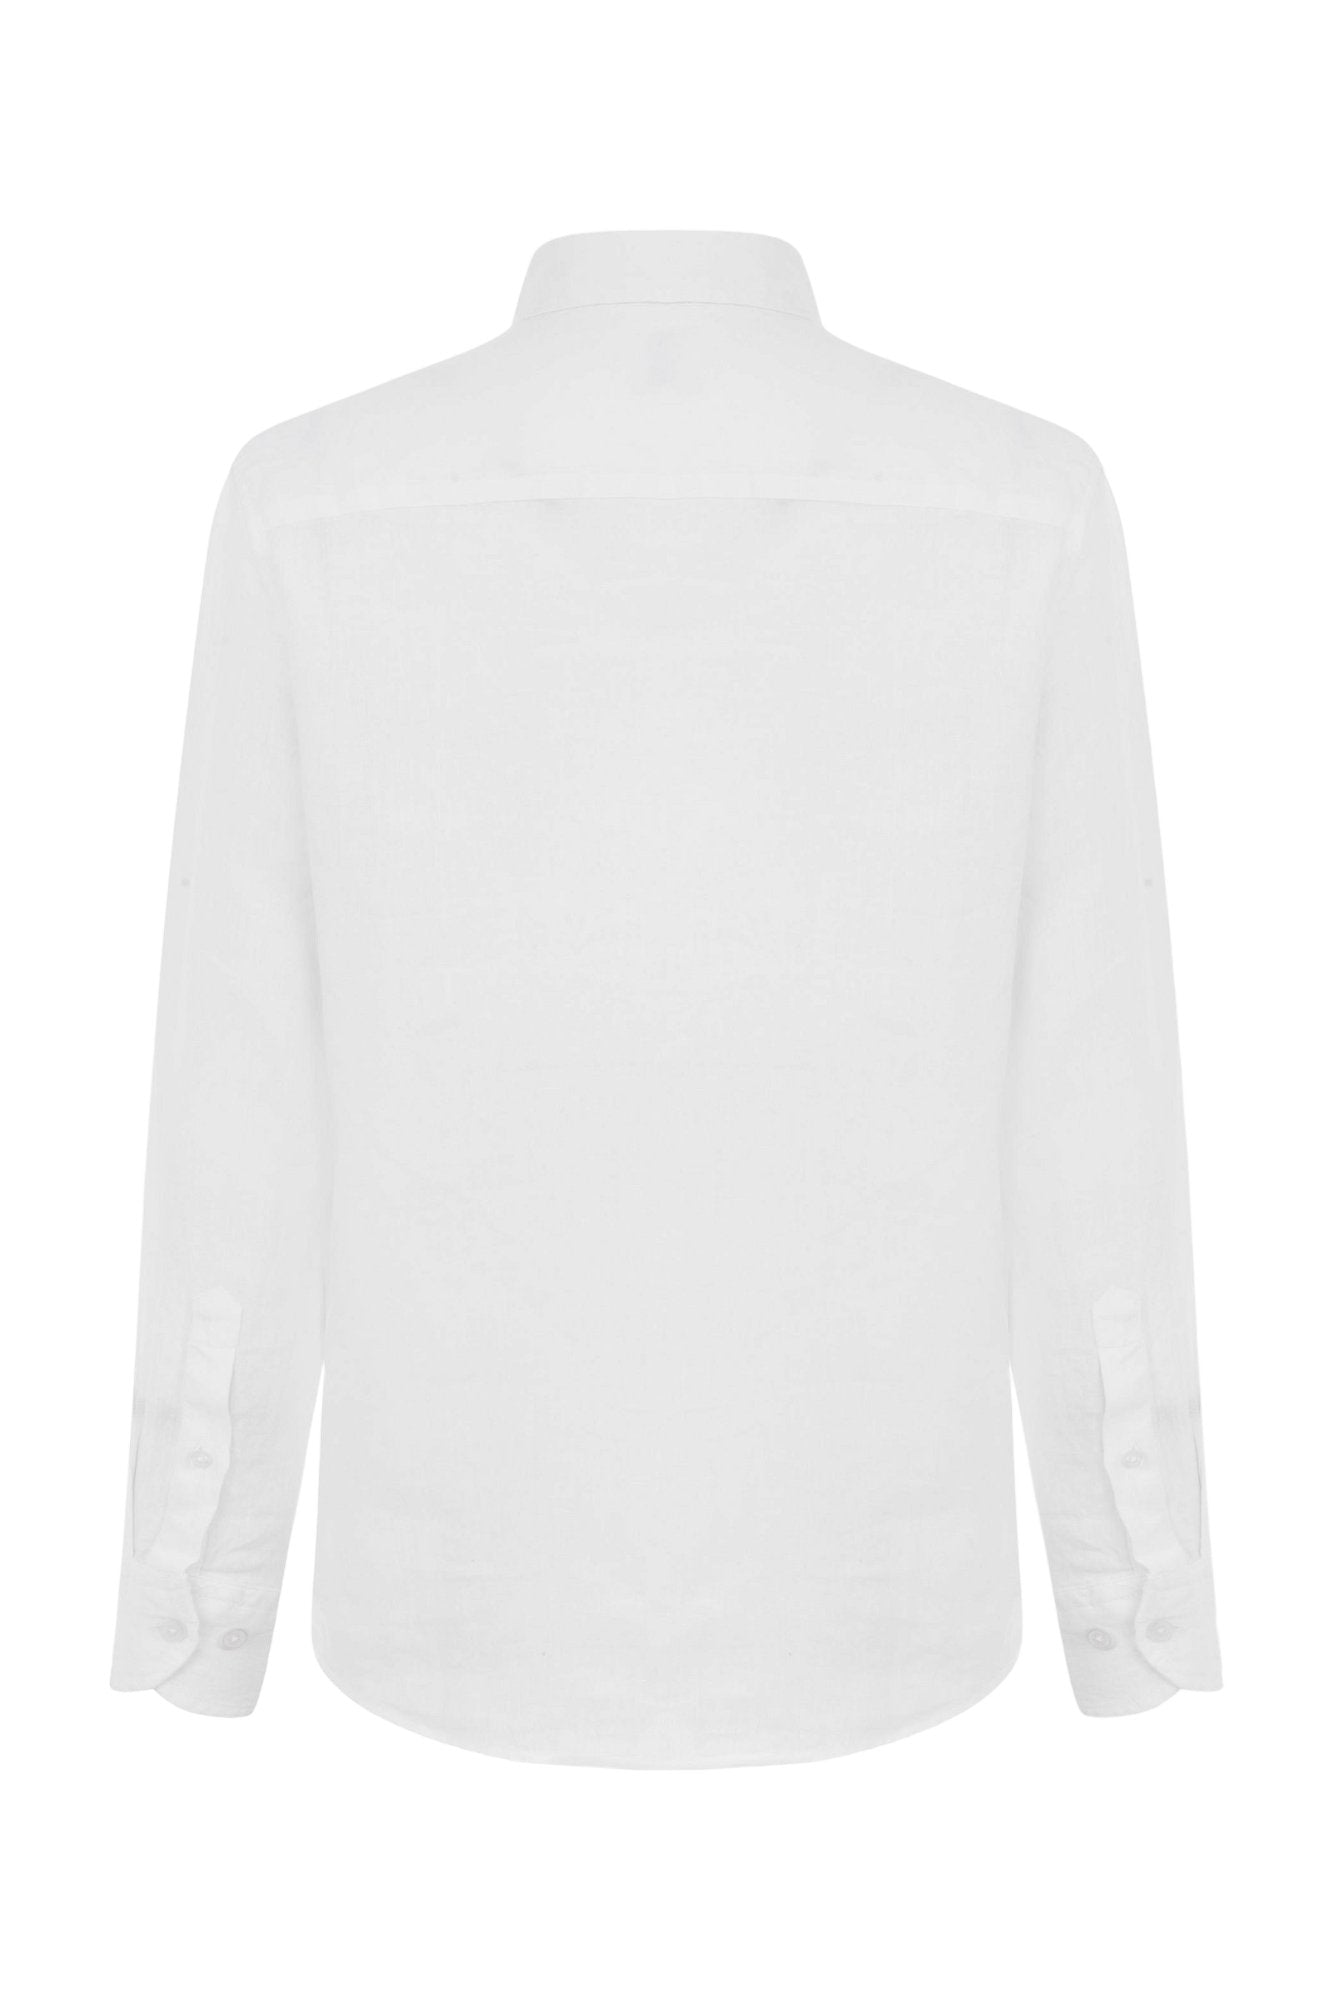 Classic Fit Linen White Long Sleeve Shirt Shirt 99percenthandmade   